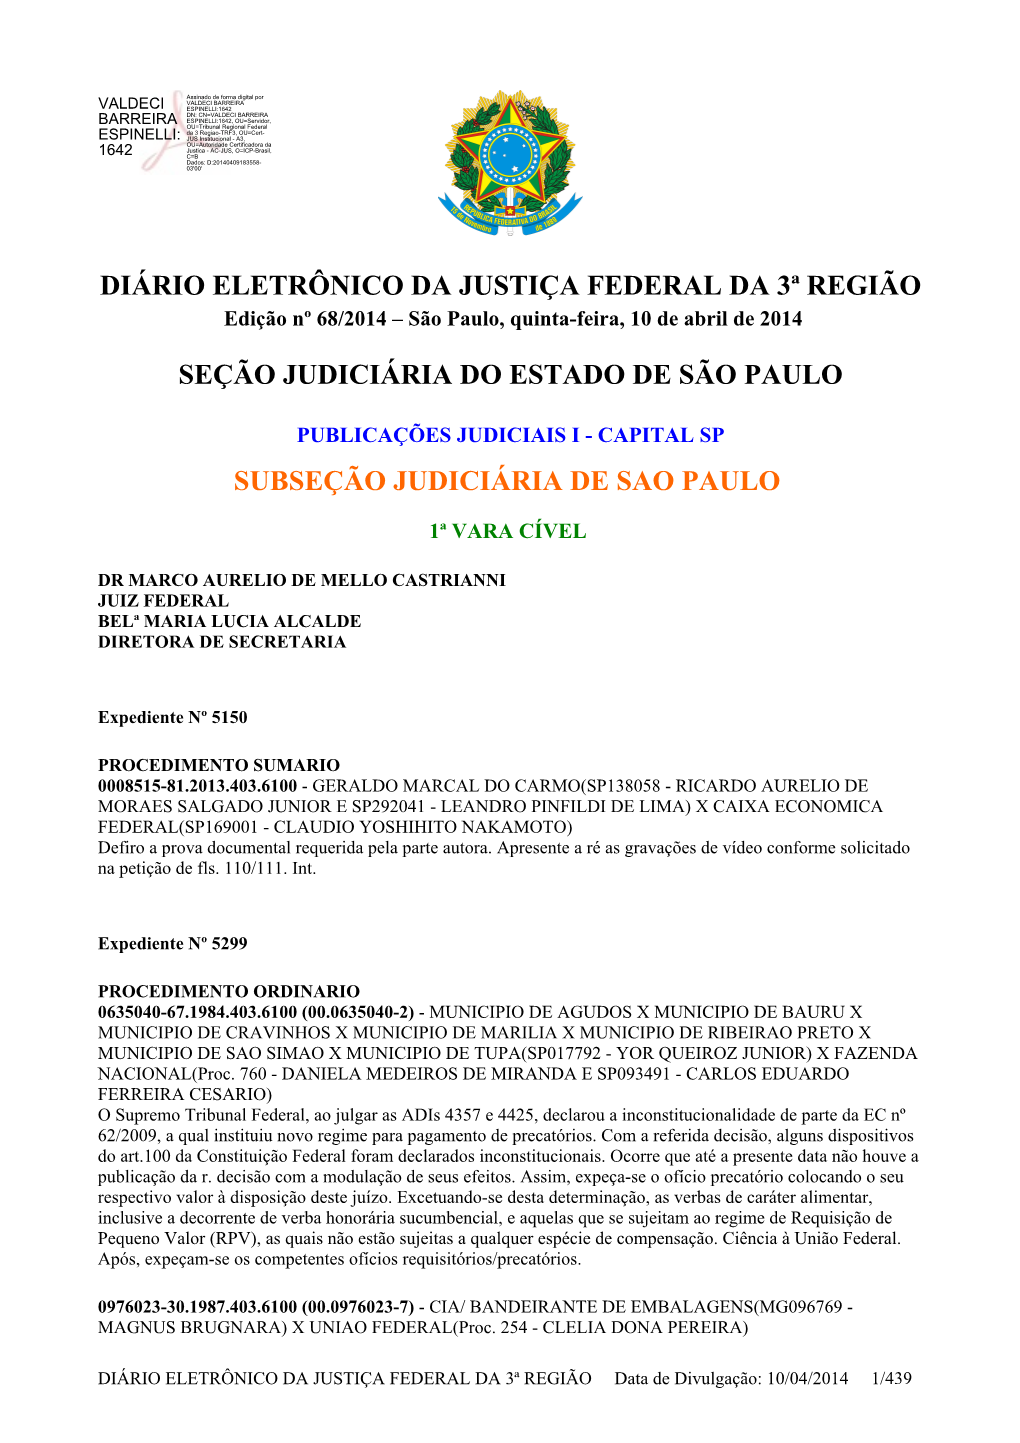 Diário Eletrônico Da Justiça Federal Da 3ª Região Seção Judiciária Do Estado De São Paulo Subseção Judiciária De